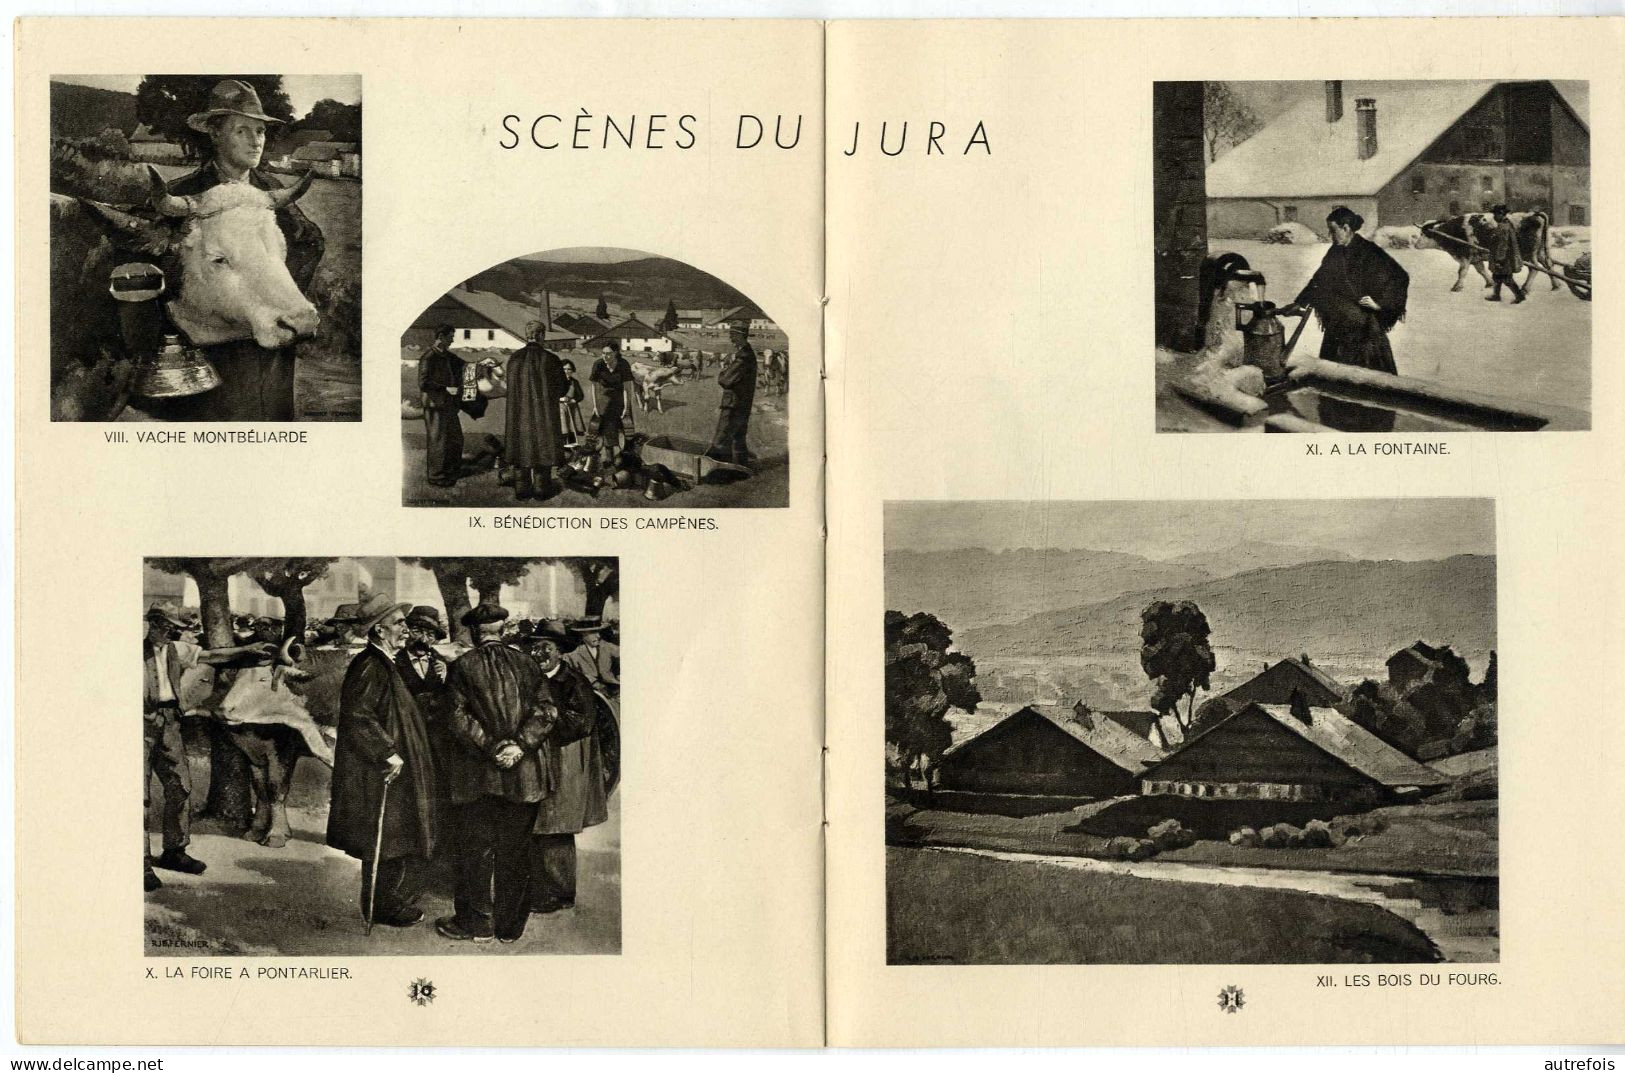 ROBERT FERNIER  PEINTRE DE NEIGE PEINTRE DU JURA PAR AUGUSTE BIALLY  -  16 PAGES  VERS 1940 - Franche-Comté